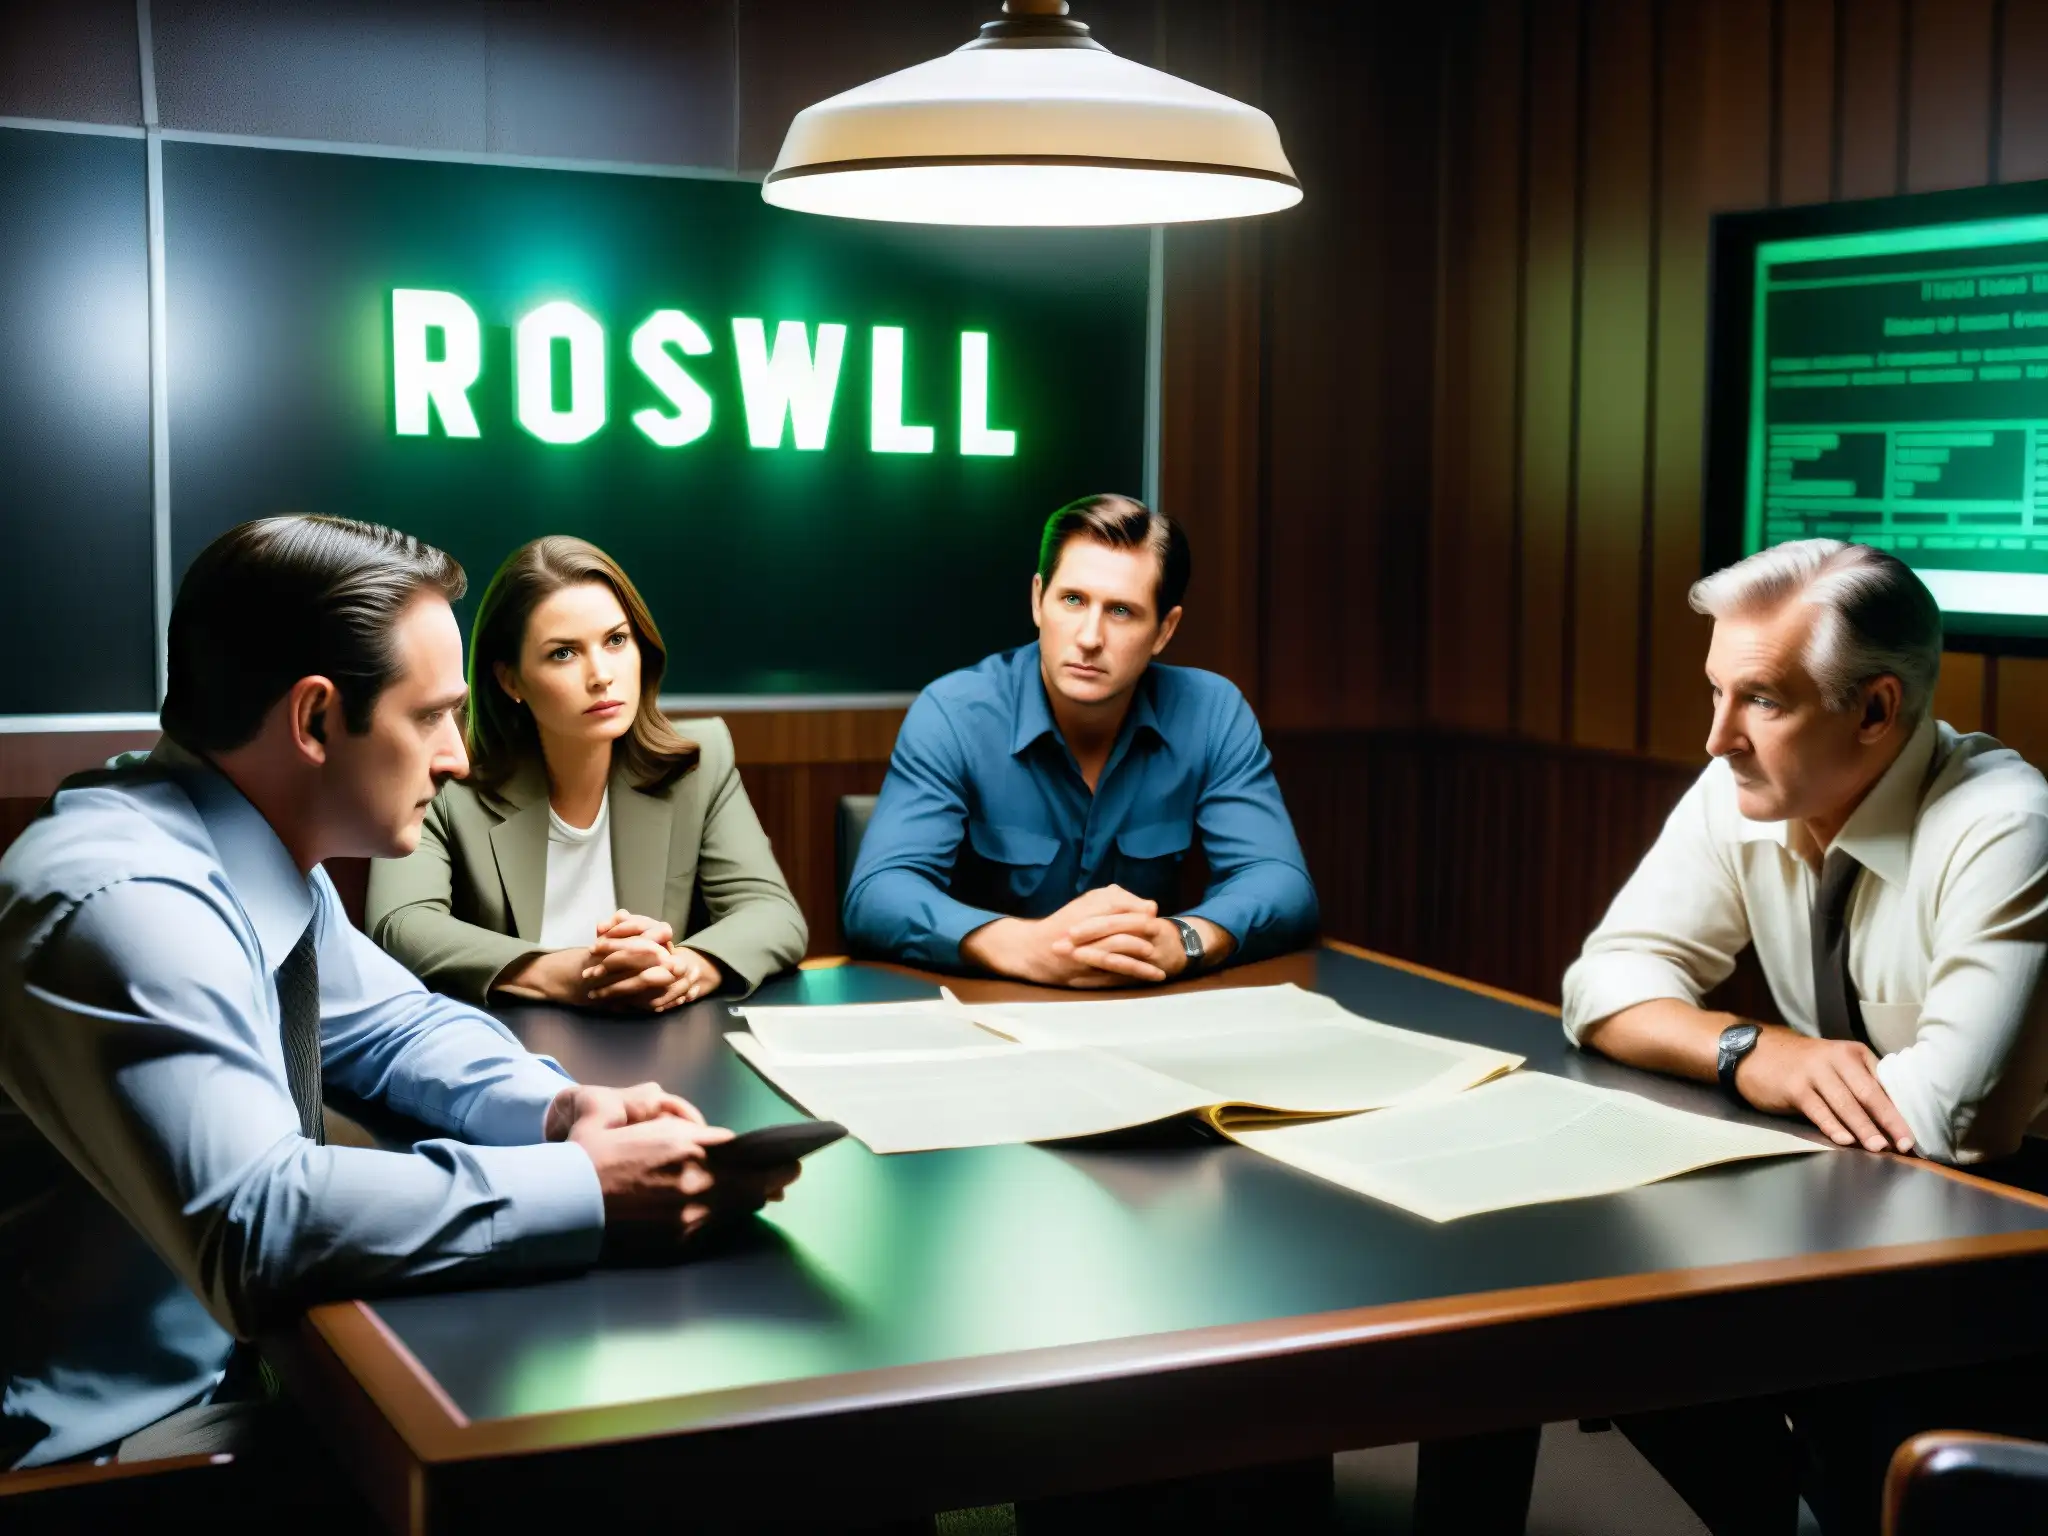 Un grupo de personas analiza documentos sobre el caso Roswell